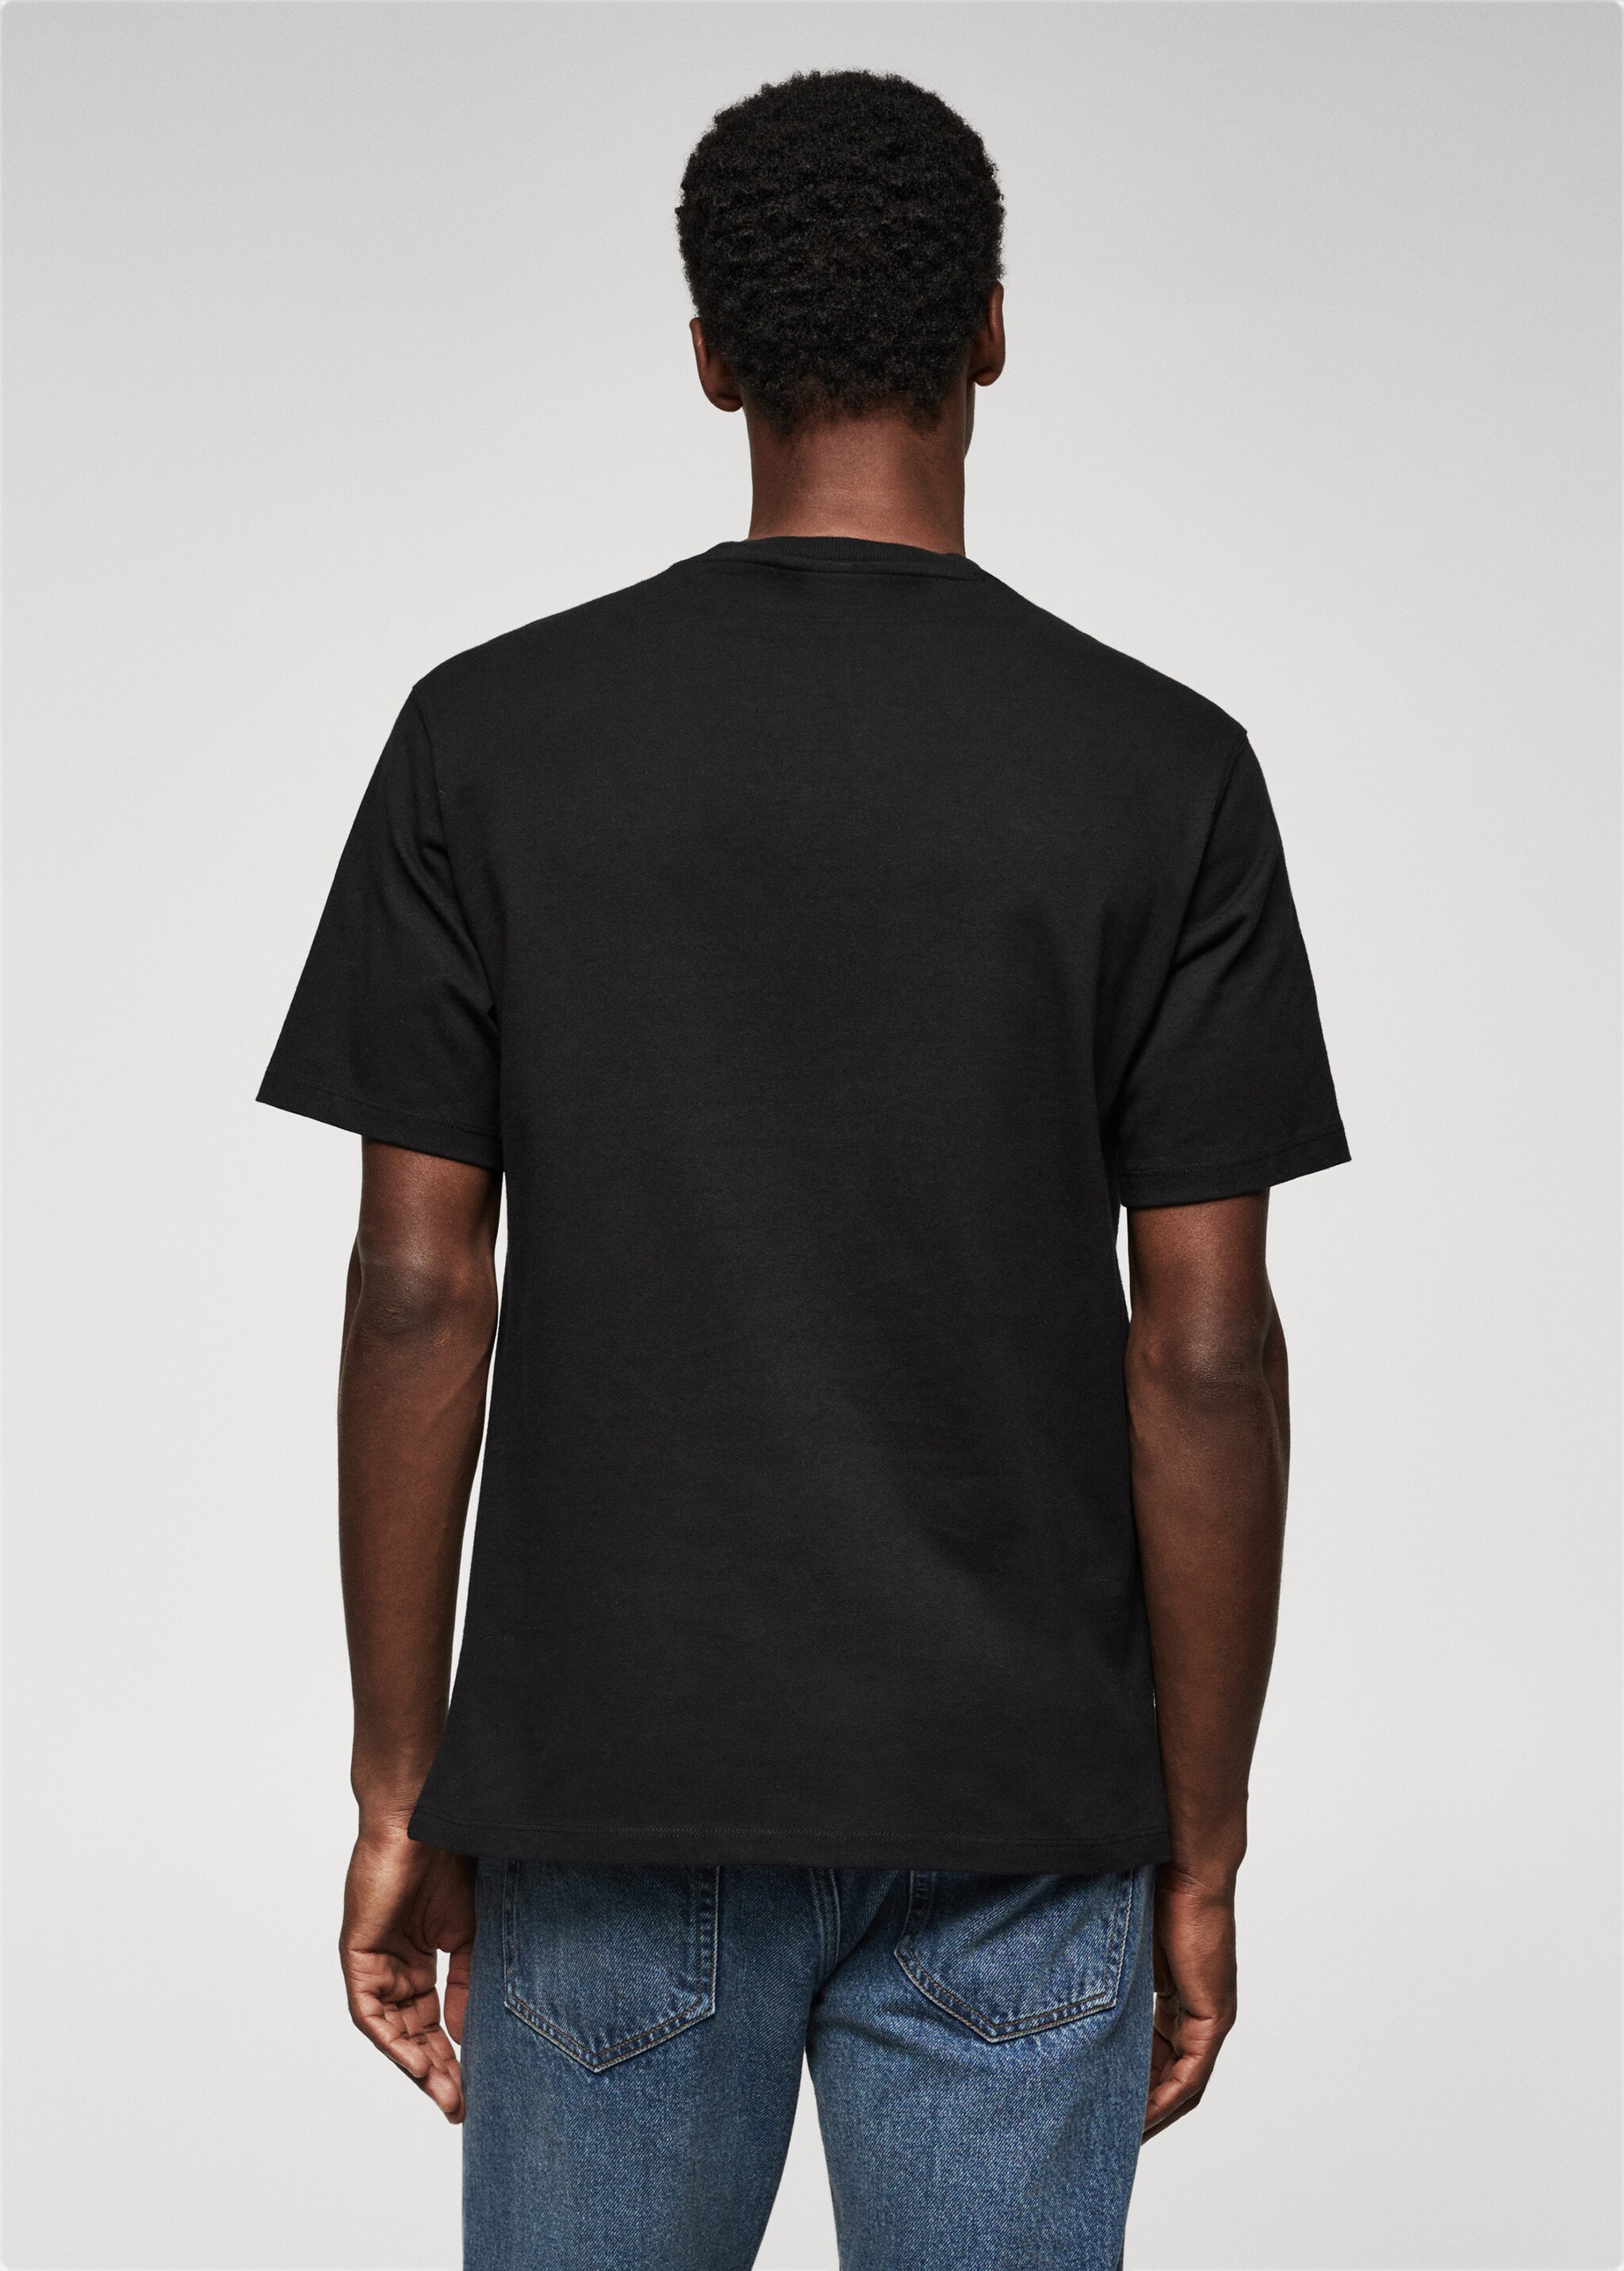 Baumwoll-T-Shirt mit Tasche - Rückseite des Artikels